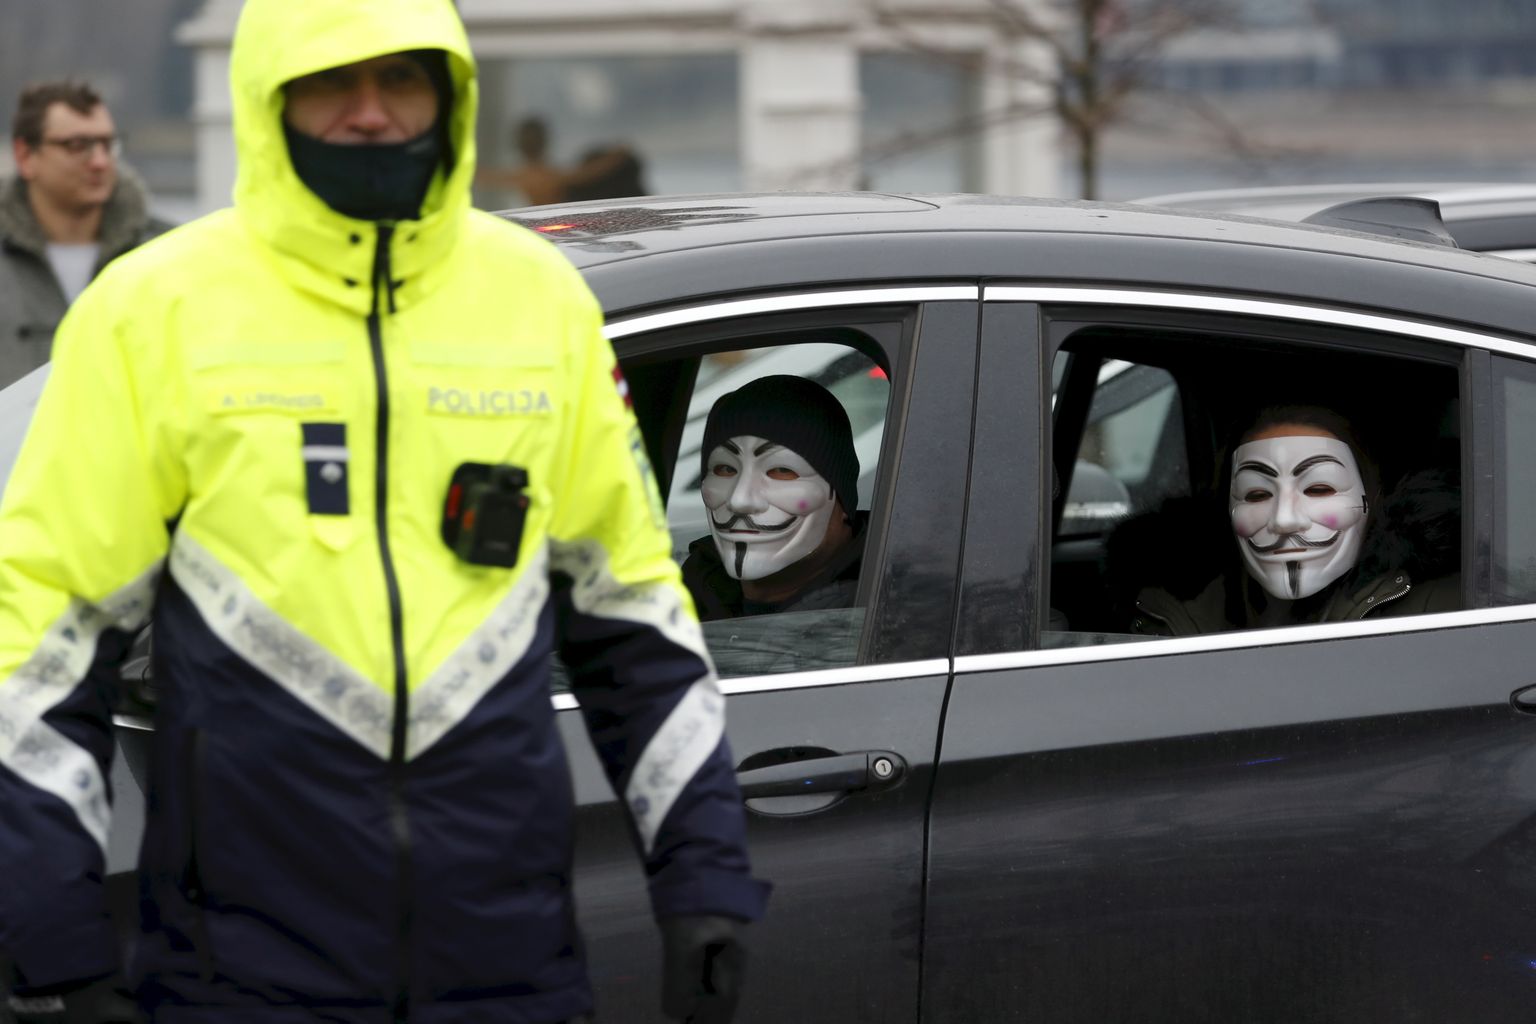 COVID-19 levikuks võetud piirangutega seotud protestiaktsioon Riias, kus meeleavaldajad istuvad autos, 12. detsembril 2020. a. Pilt on illustratiivne.